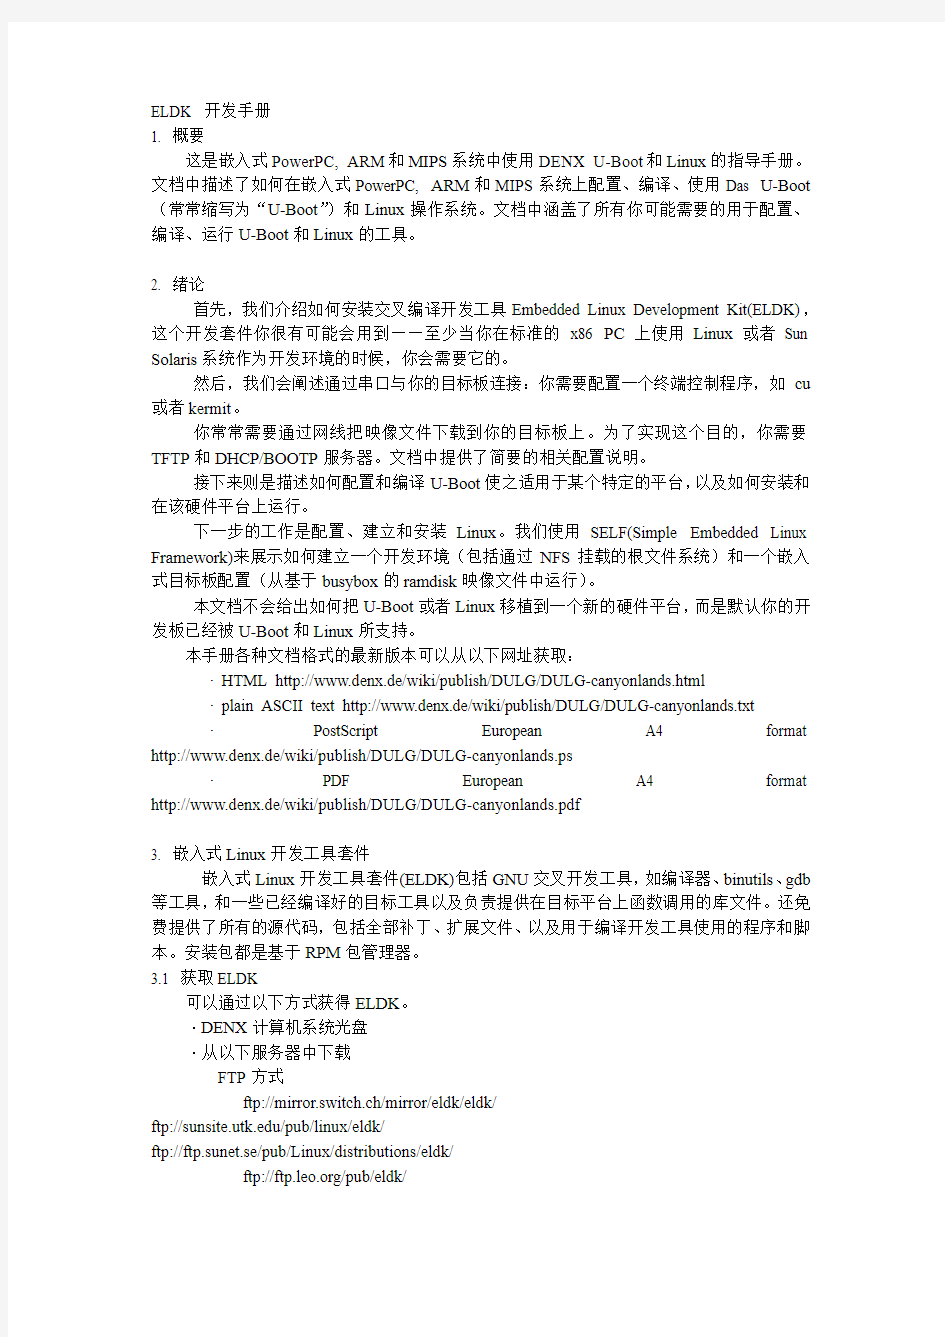 ELDK中文开发手册